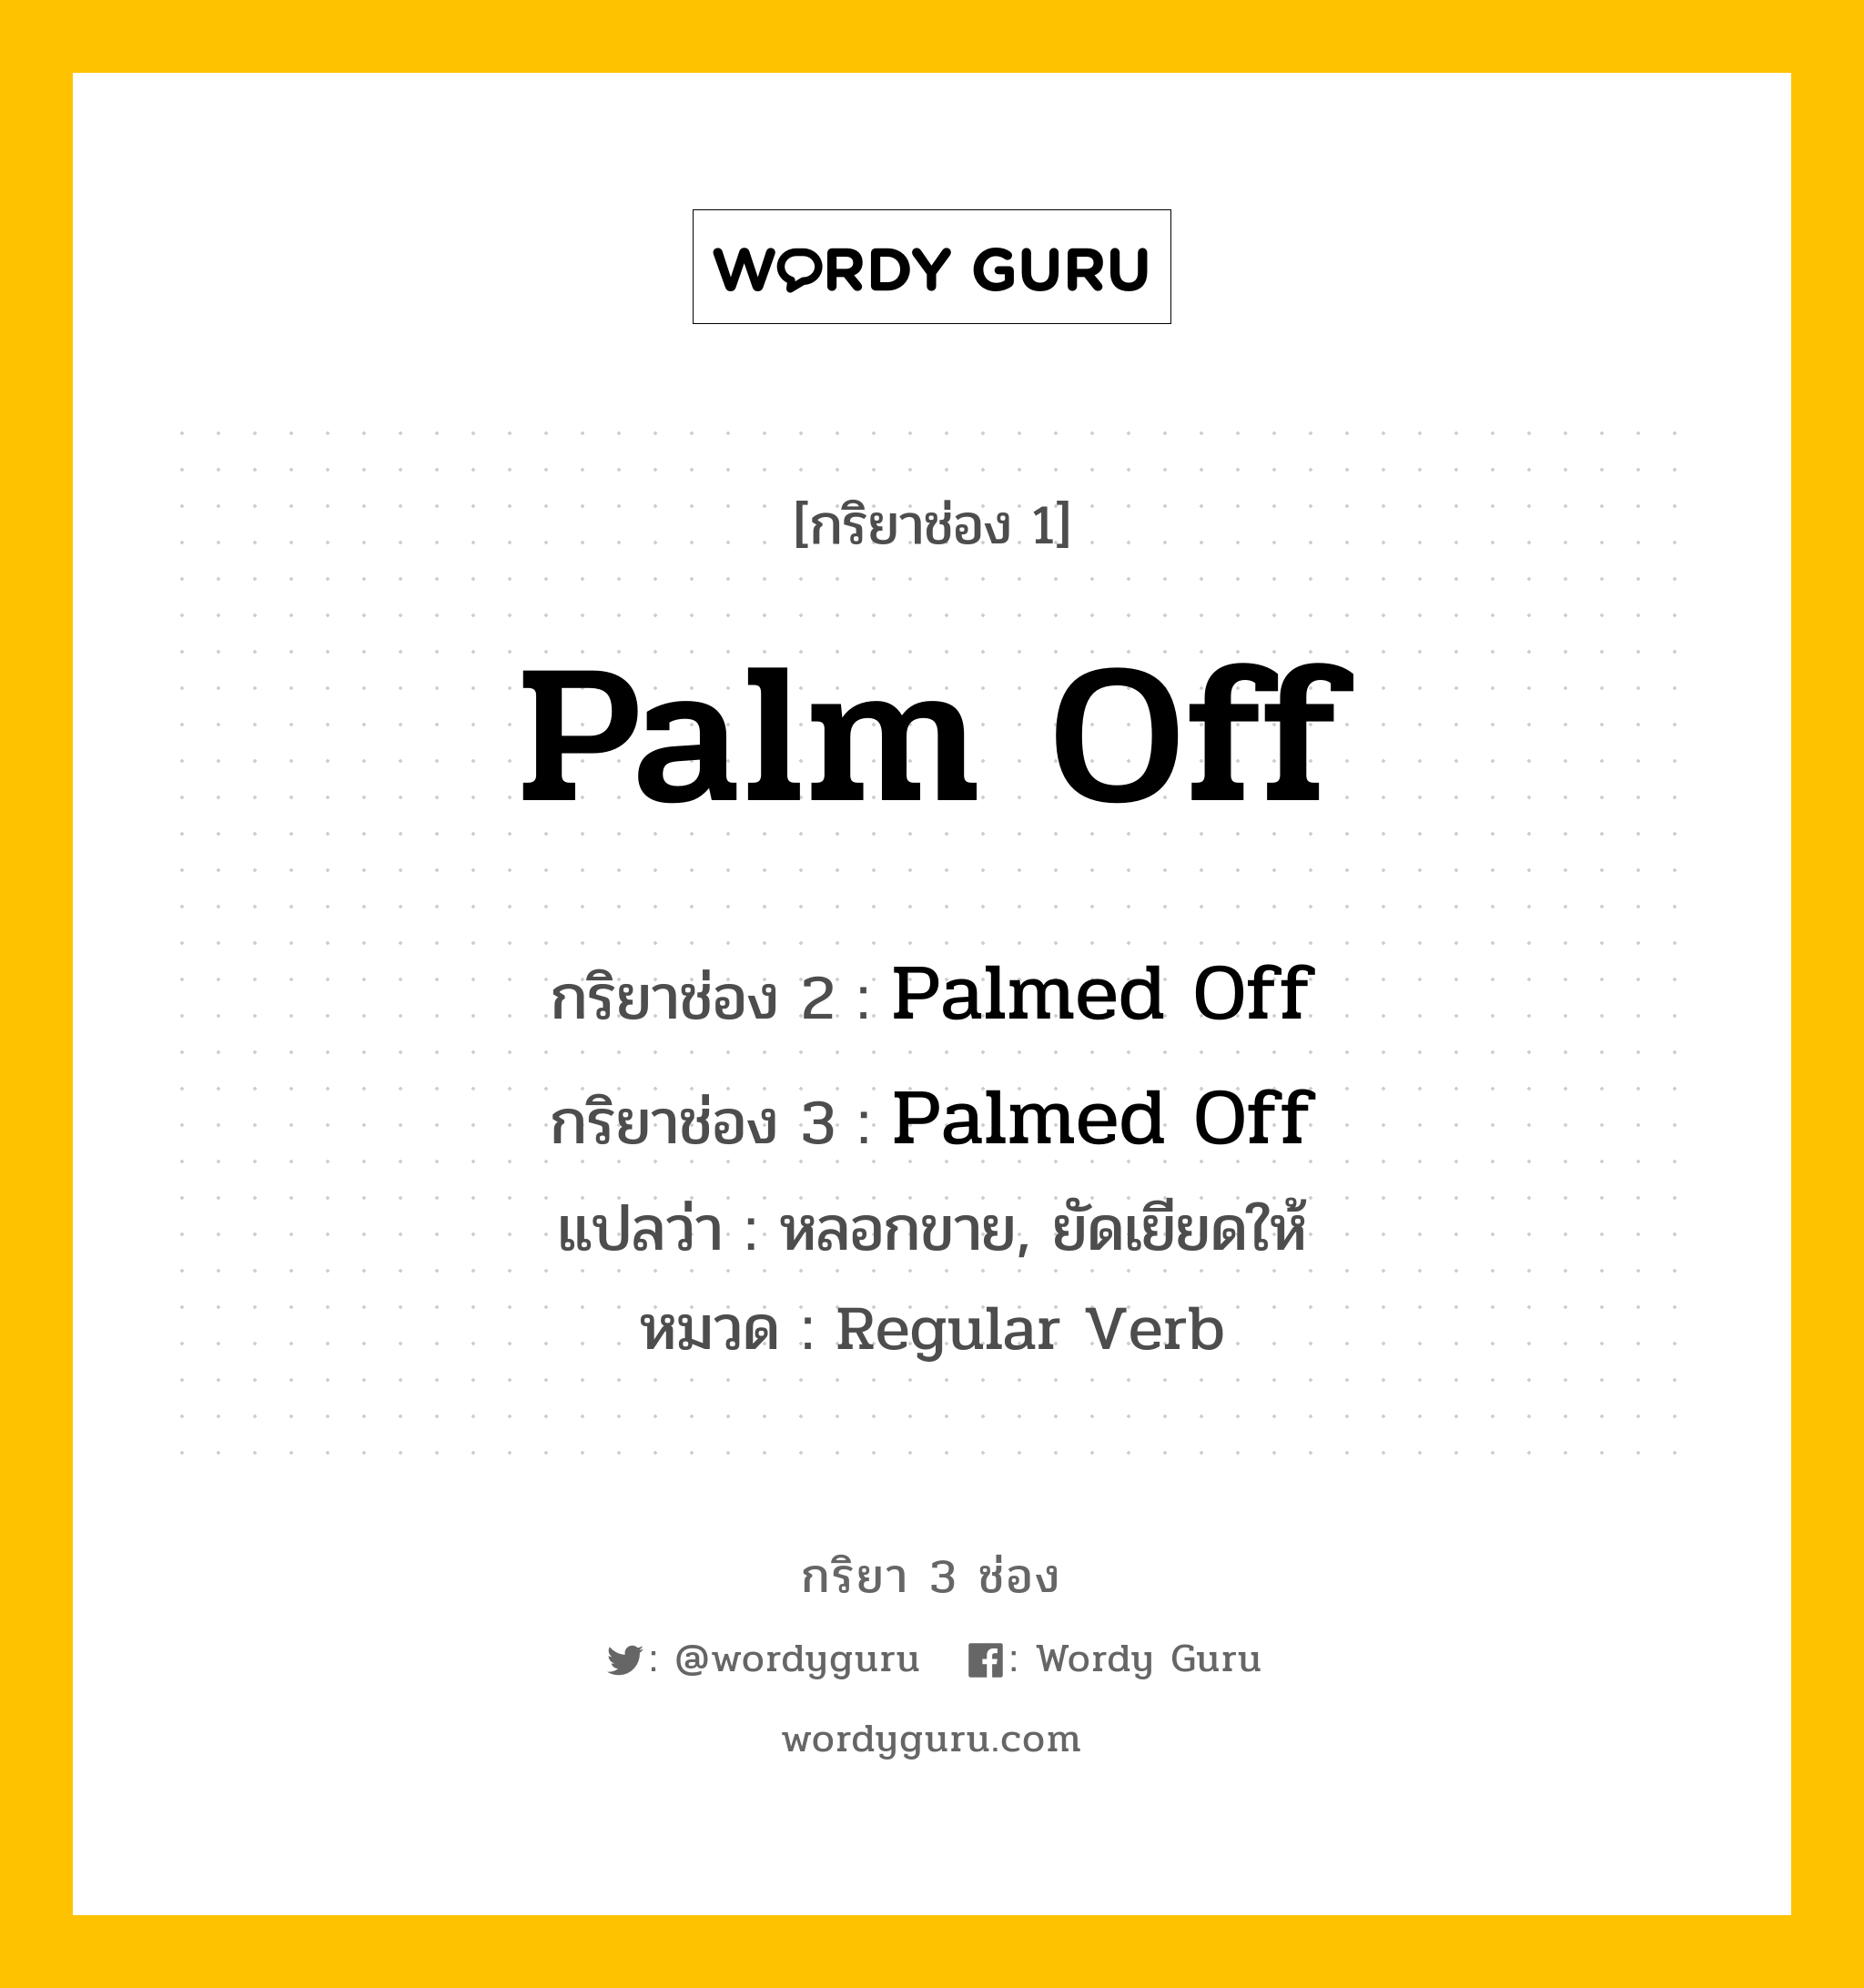 กริยา 3 ช่อง ของ Palm Off คืออะไร? มาดูคำอ่าน คำแปลกันเลย, กริยาช่อง 1 Palm Off กริยาช่อง 2 Palmed Off กริยาช่อง 3 Palmed Off แปลว่า หลอกขาย, ยัดเยียดให้ หมวด Regular Verb หมวด Regular Verb